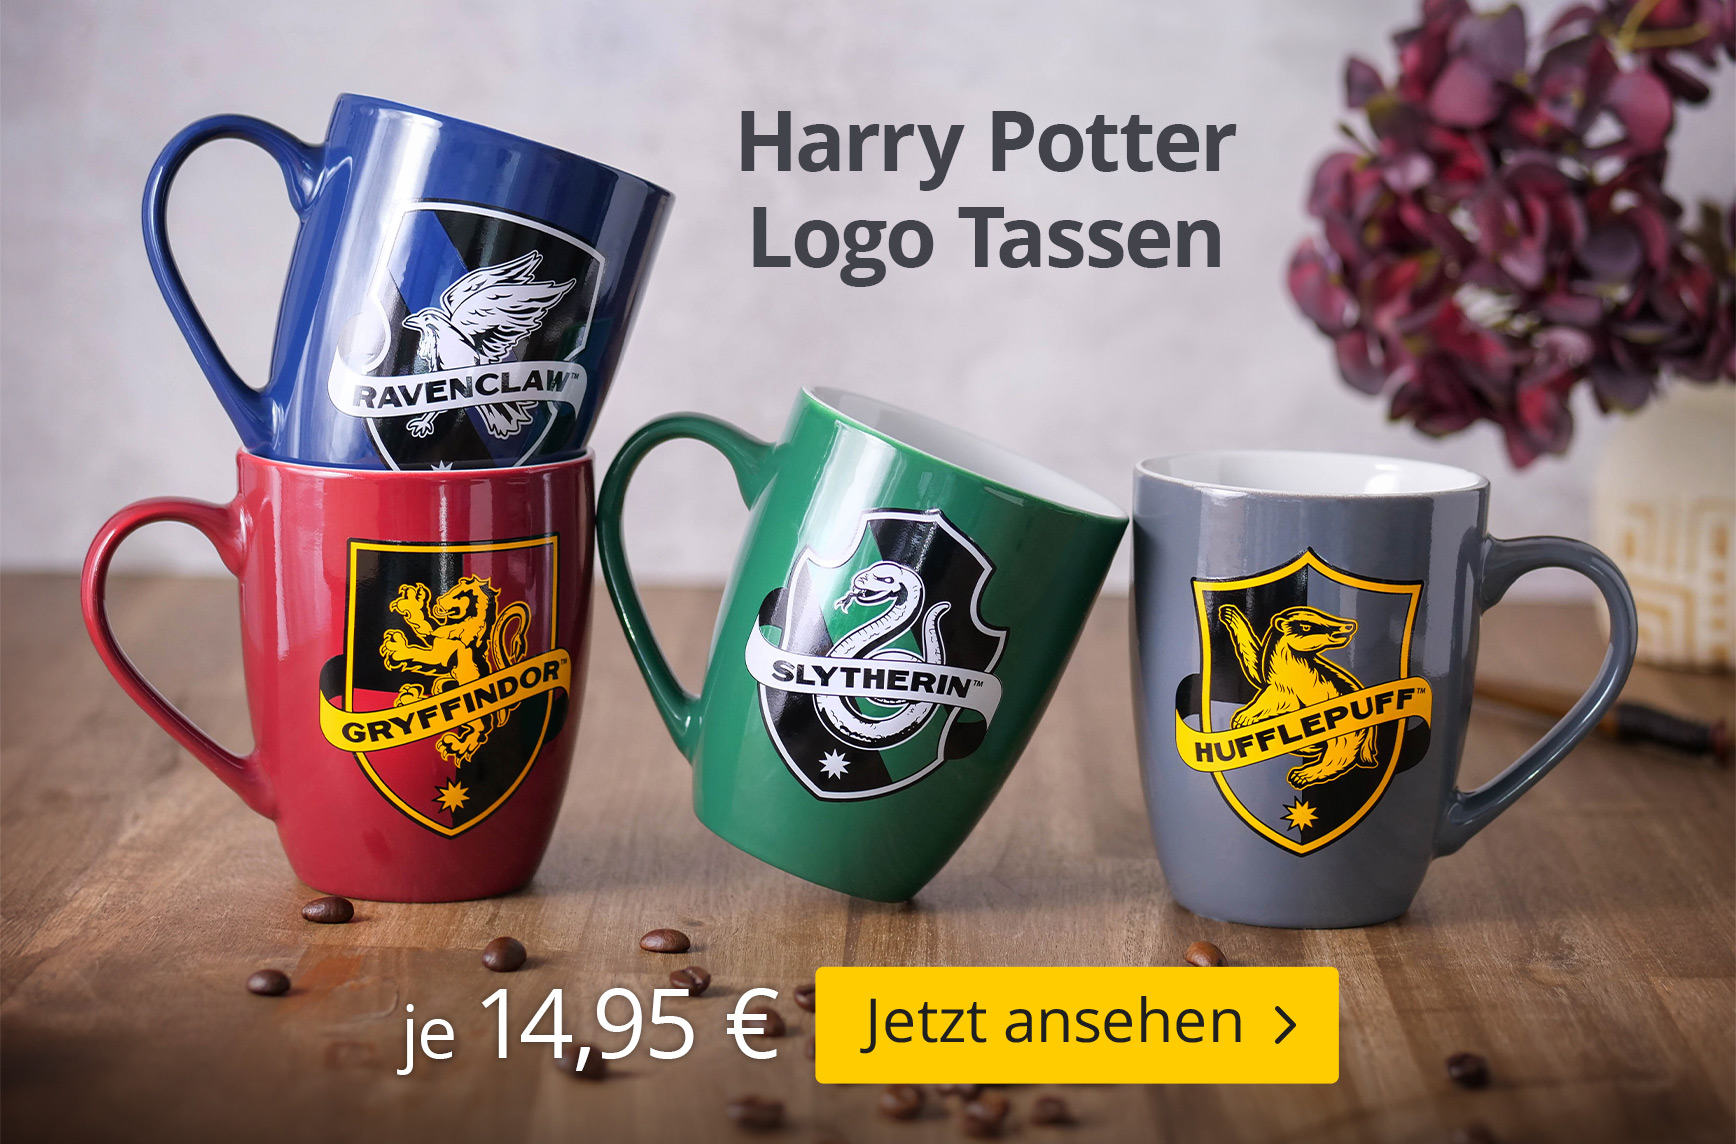 Harry Potter Logo Tassen - je 14,95€